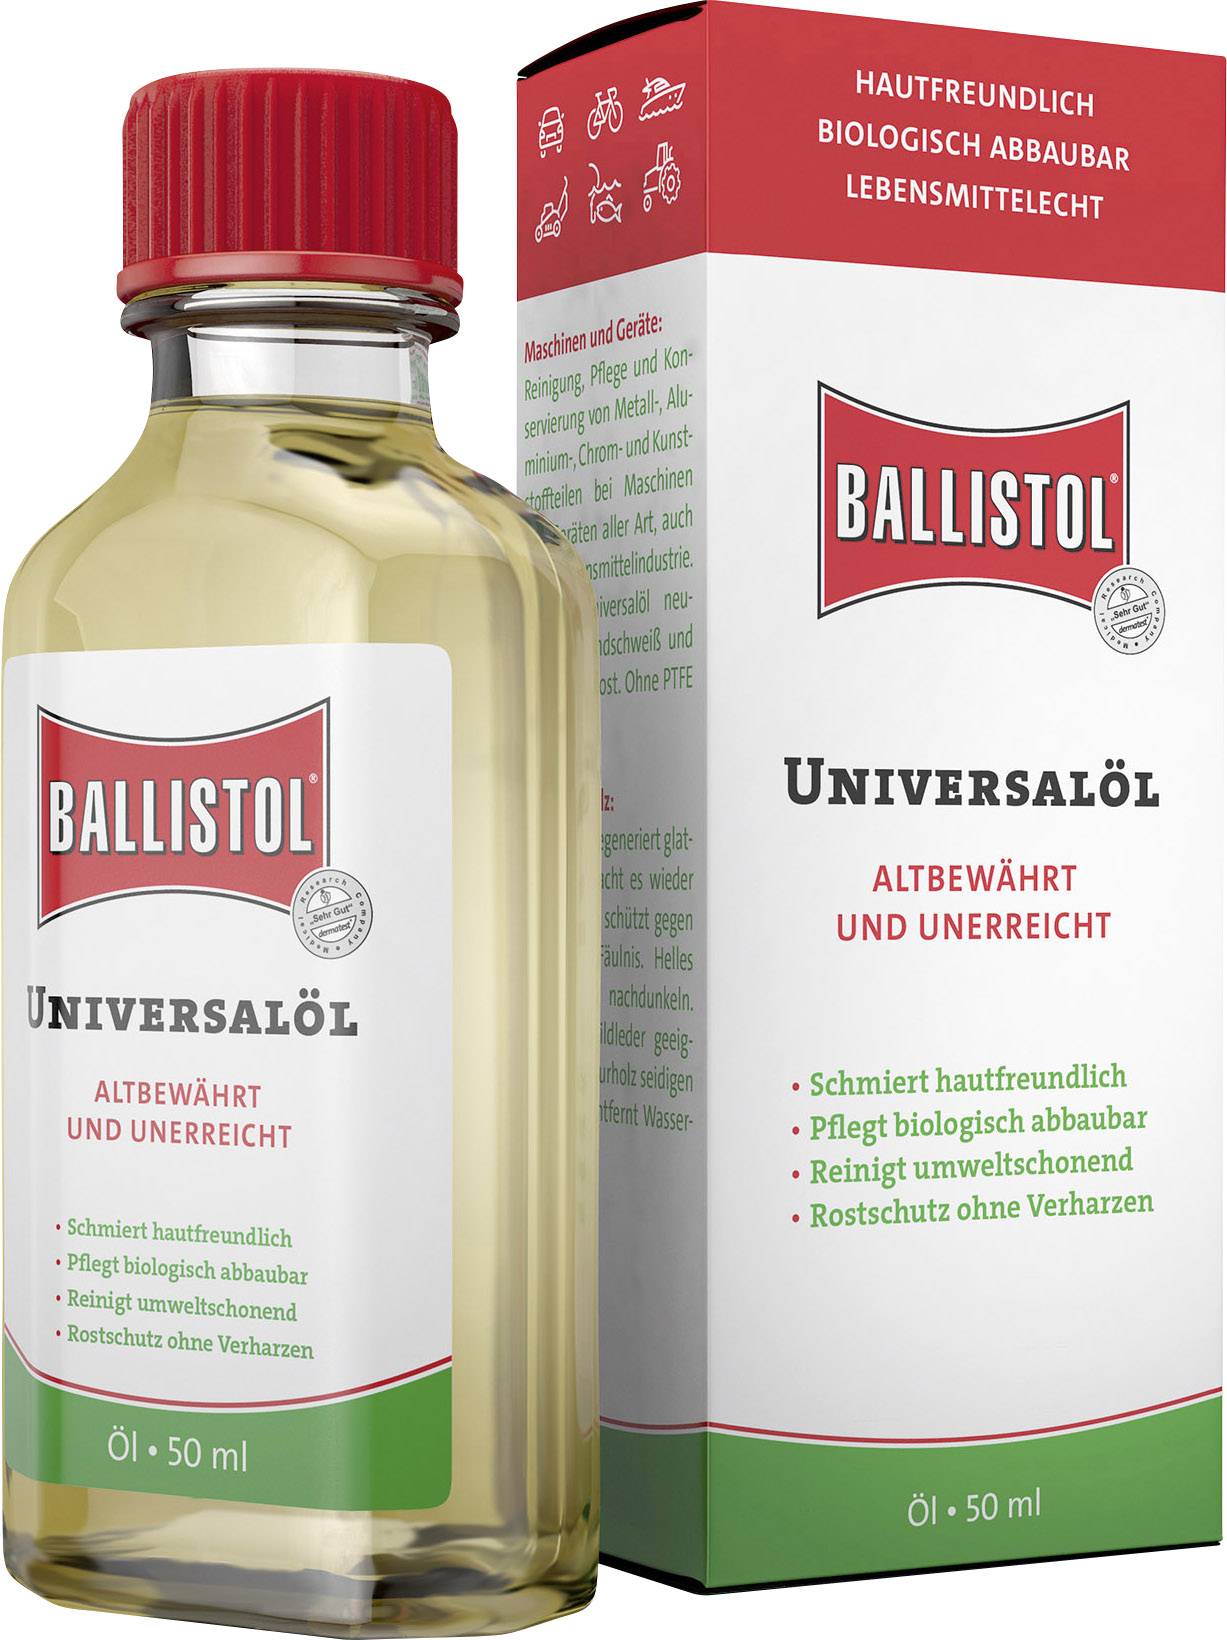 Buy Ballistol Universal Oil 50ml